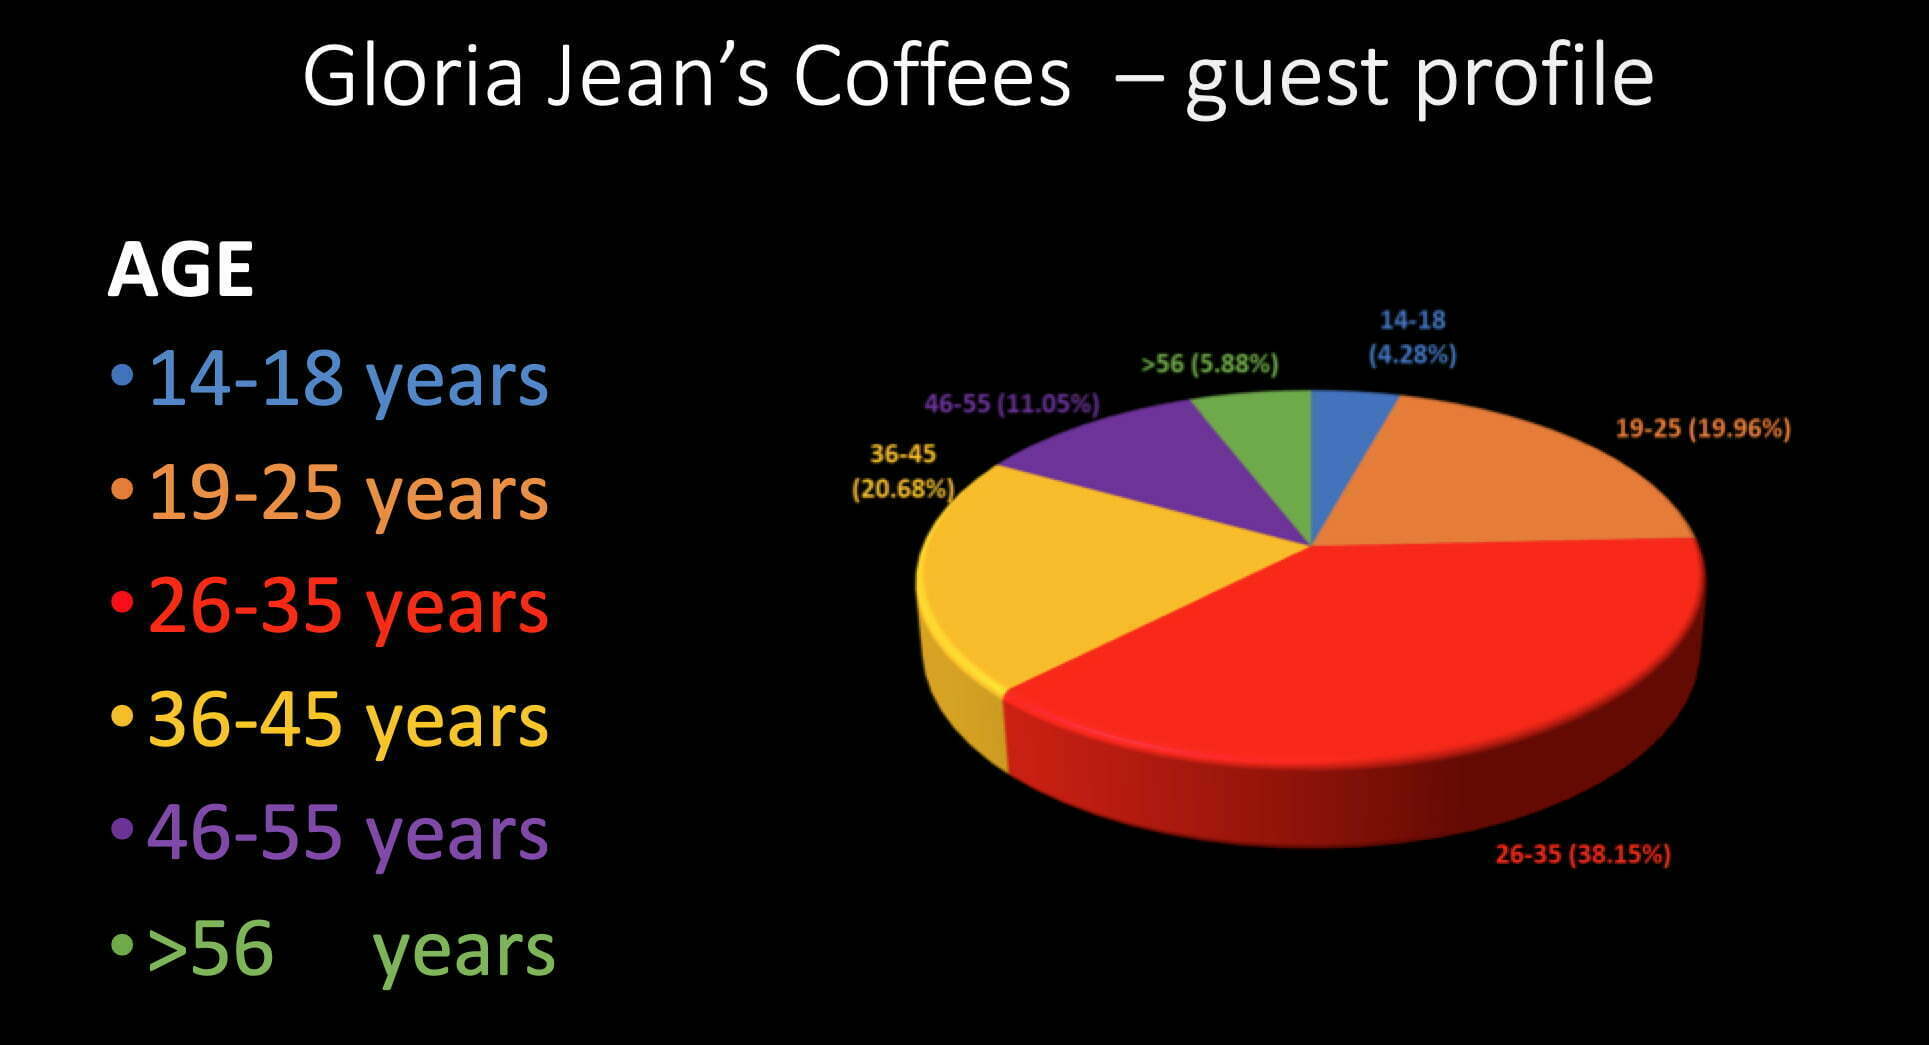 Profilul cosumatori Gloria Jean’s Coffees